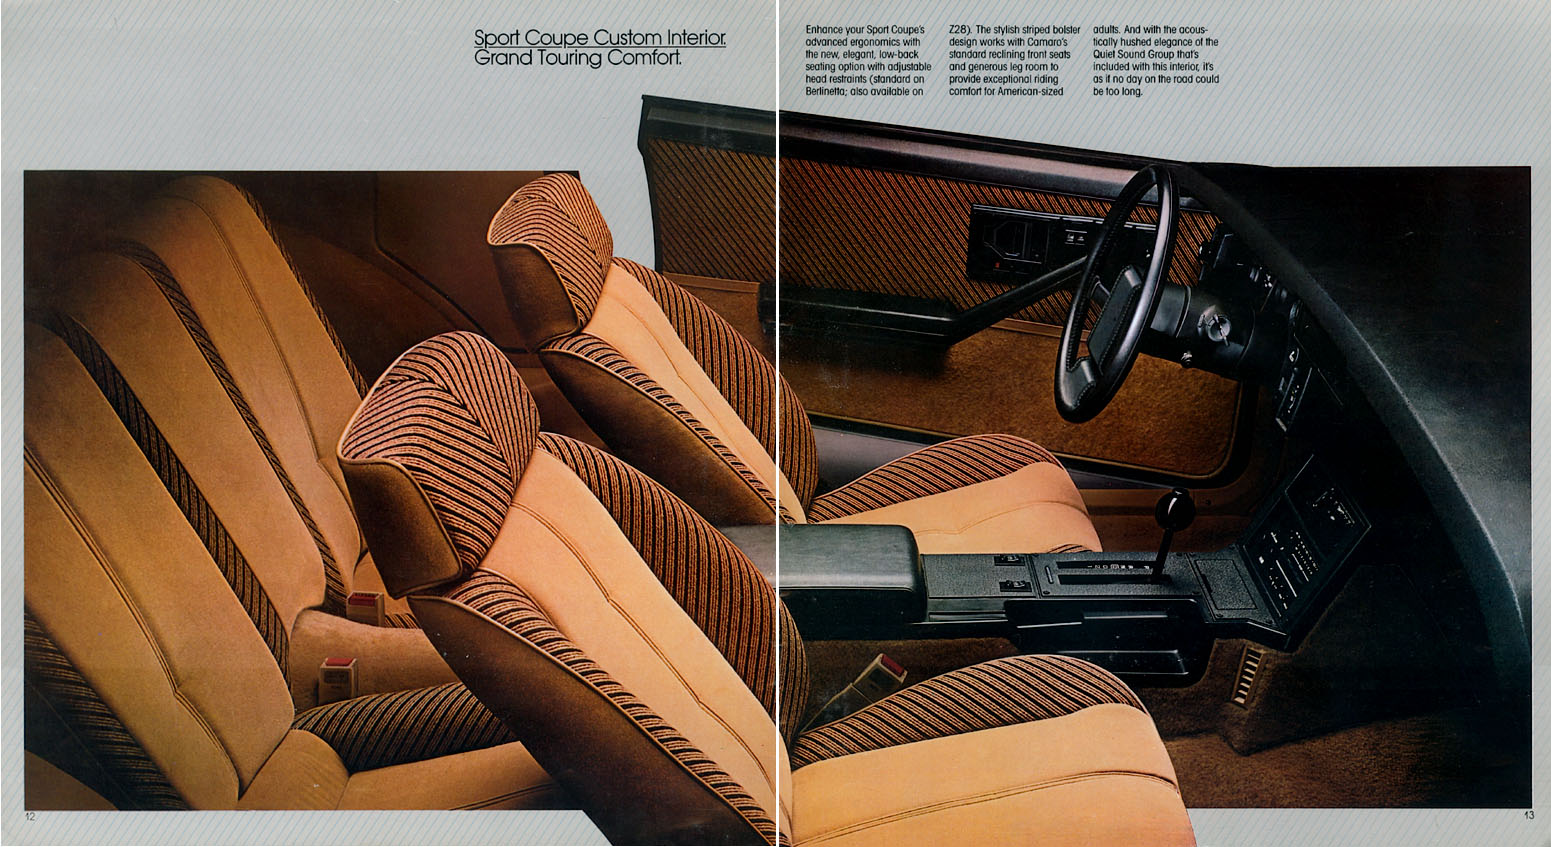 1983 Camaro OEM Brochure (7)